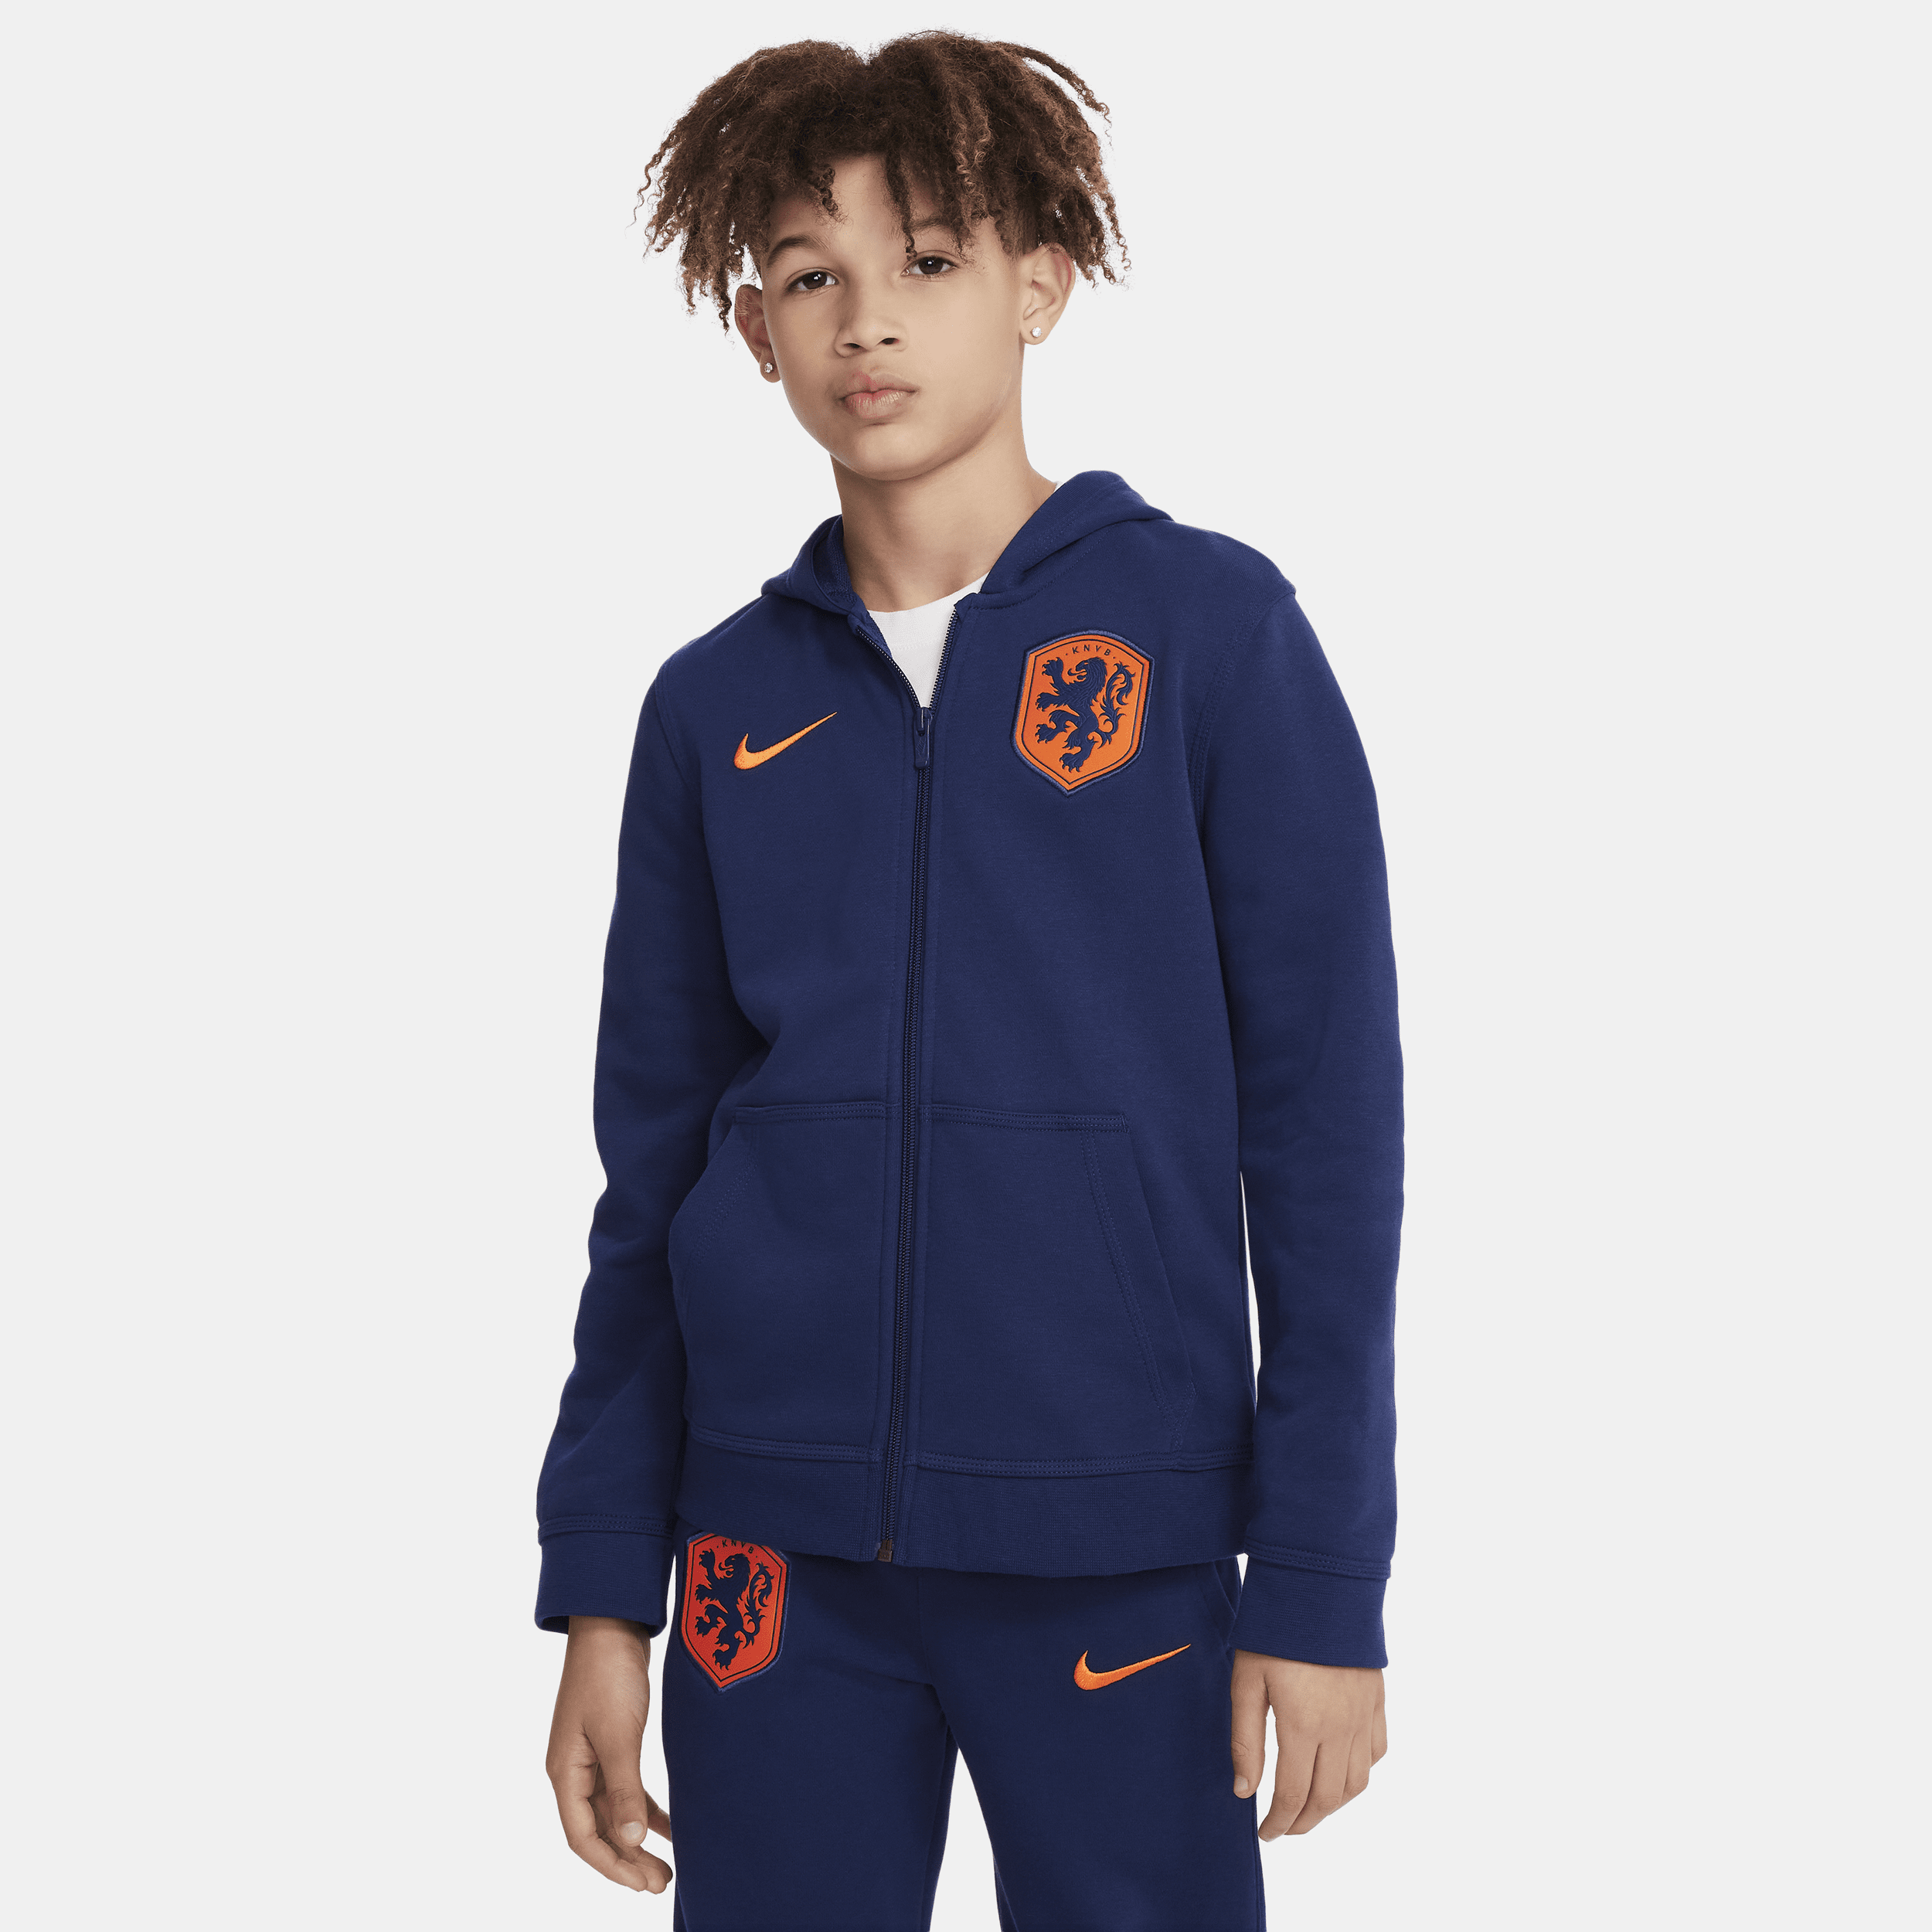 Nike Nederland hoodie van sweatstof met rits over de hele lengte voor jongens Blauw